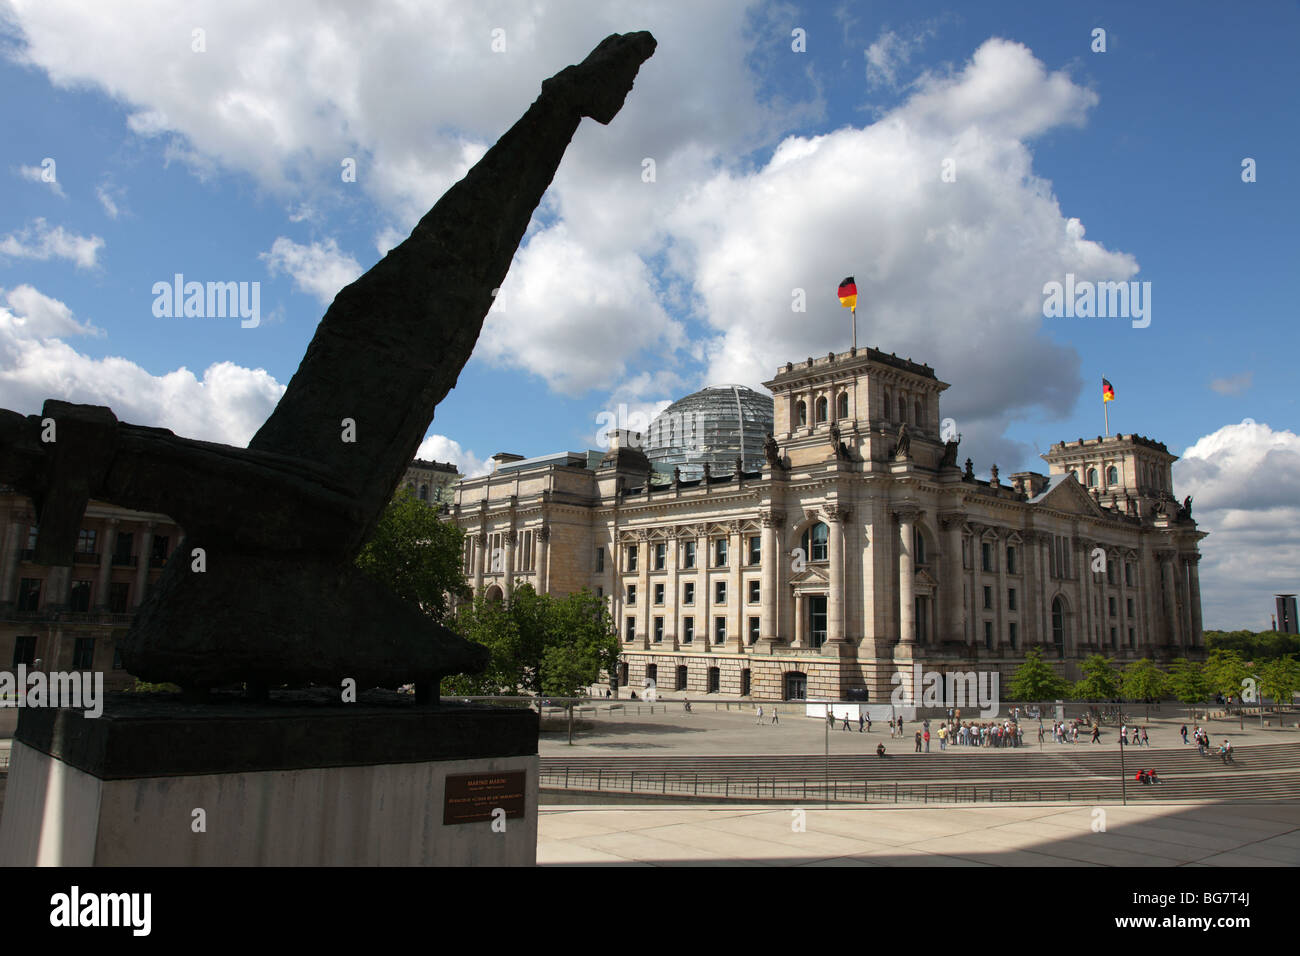 Allemagne Berlin Reichstag bâtiment du parlement allemand Marino Marini Sculpture en premier plan Miracle Miracolo- L'idea di un' immagi Banque D'Images